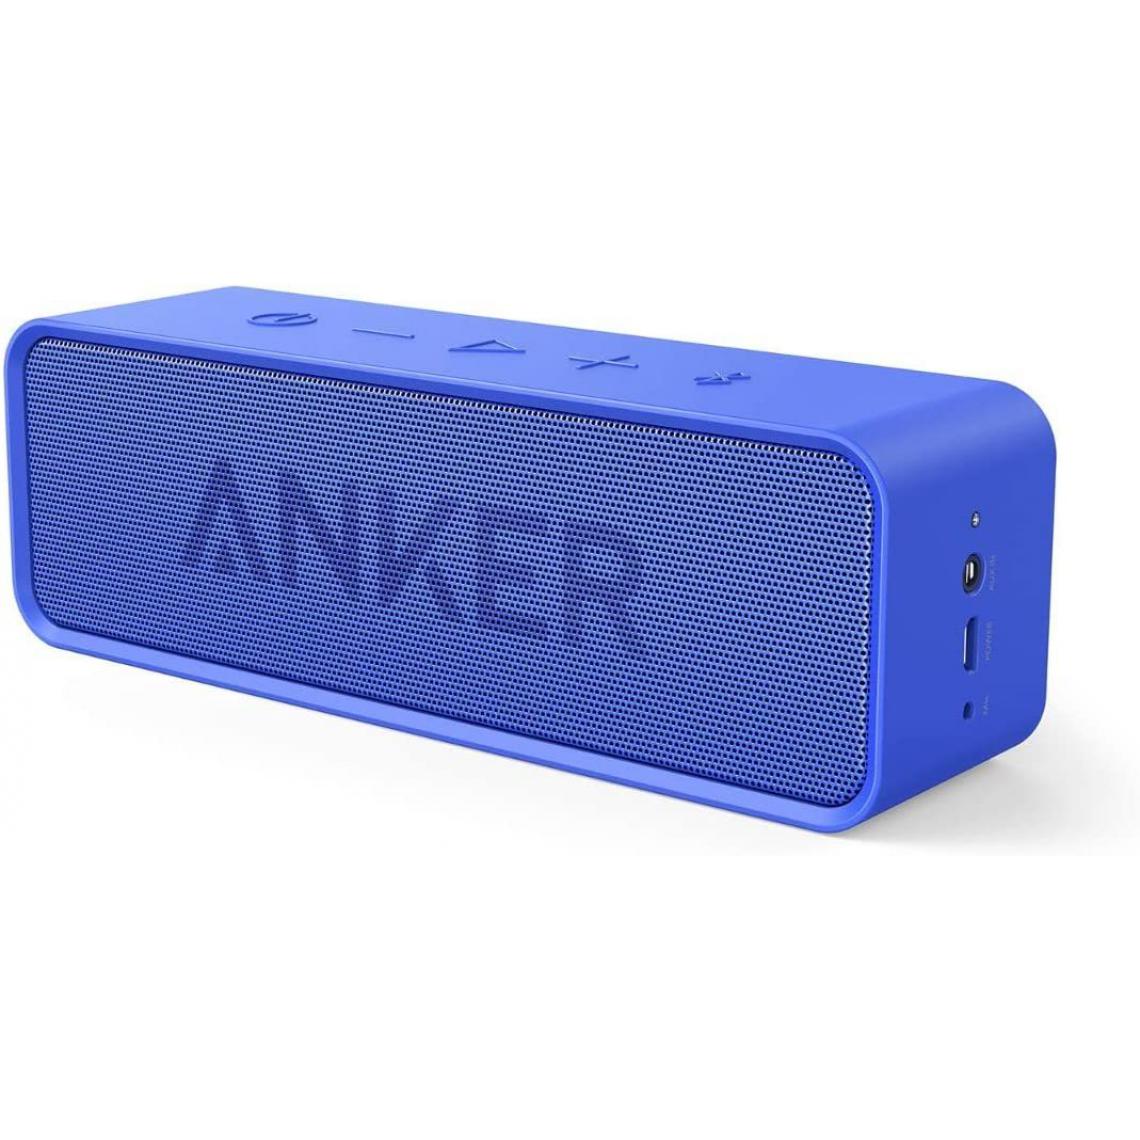 Chrono - Haut-parleur Bluetooth, version mise à niveau du haut-parleur Bluetooth Anker Soundcore, avec stéréo, technologie BassUp, 25 heures de lecture, microphone intégré, haut-parleur portable sans fil pour iPhone, Samsung(Bleu) - Enceintes Hifi